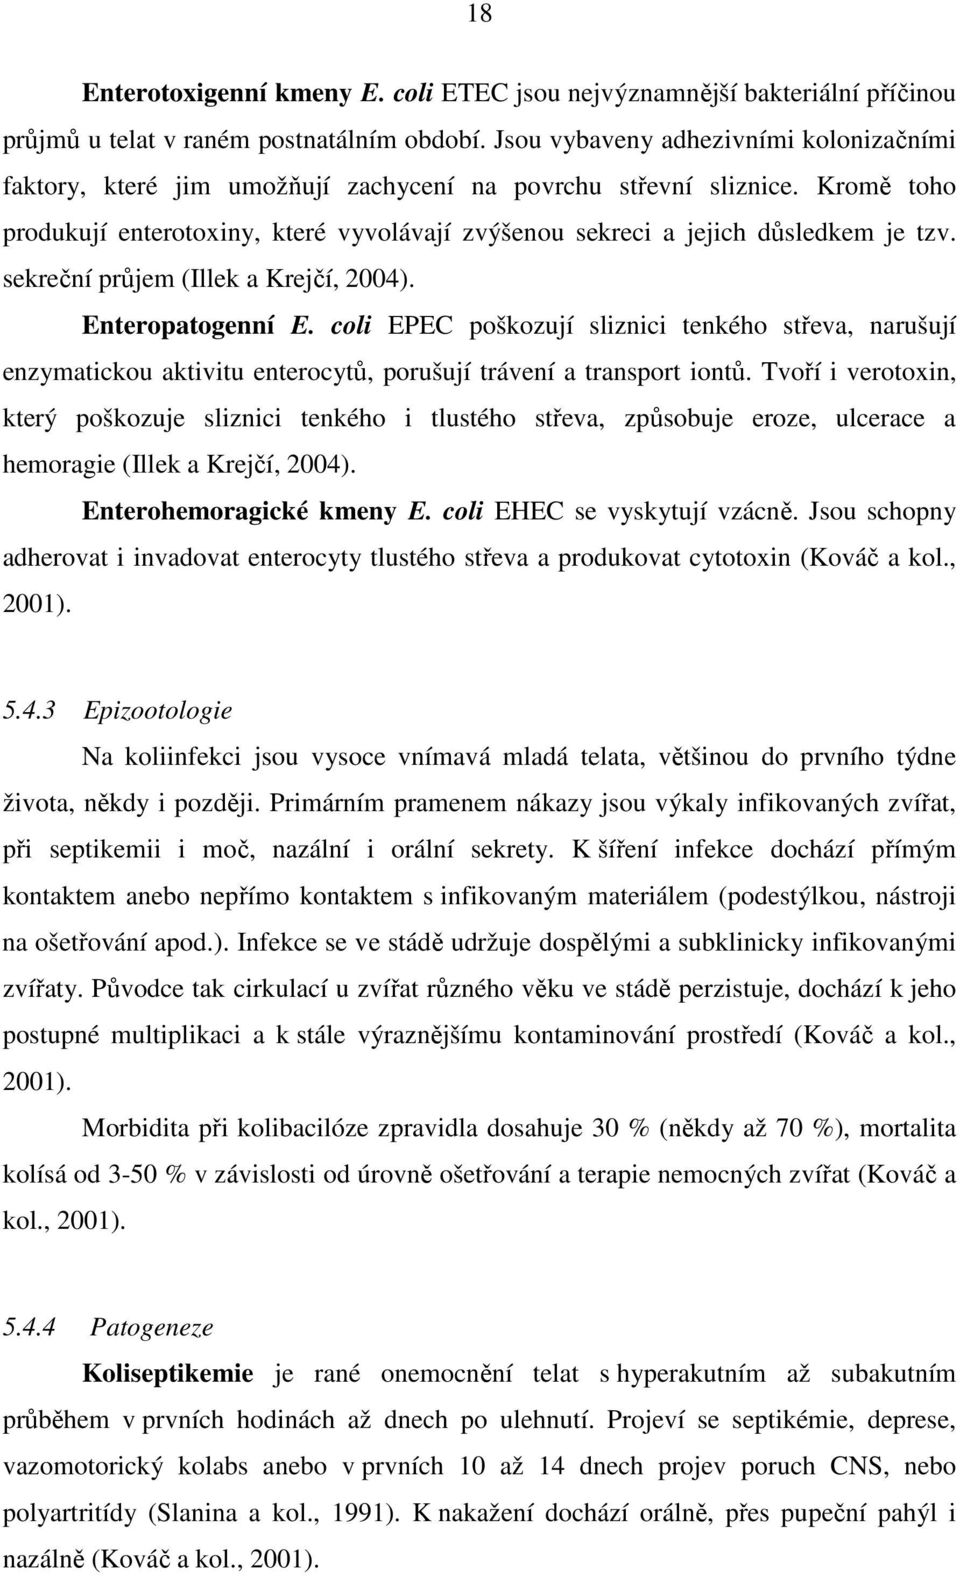 Kromě toho produkují enterotoxiny, které vyvolávají zvýšenou sekreci a jejich důsledkem je tzv. sekreční průjem (Illek a Krejčí, 2004). Enteropatogenní E.